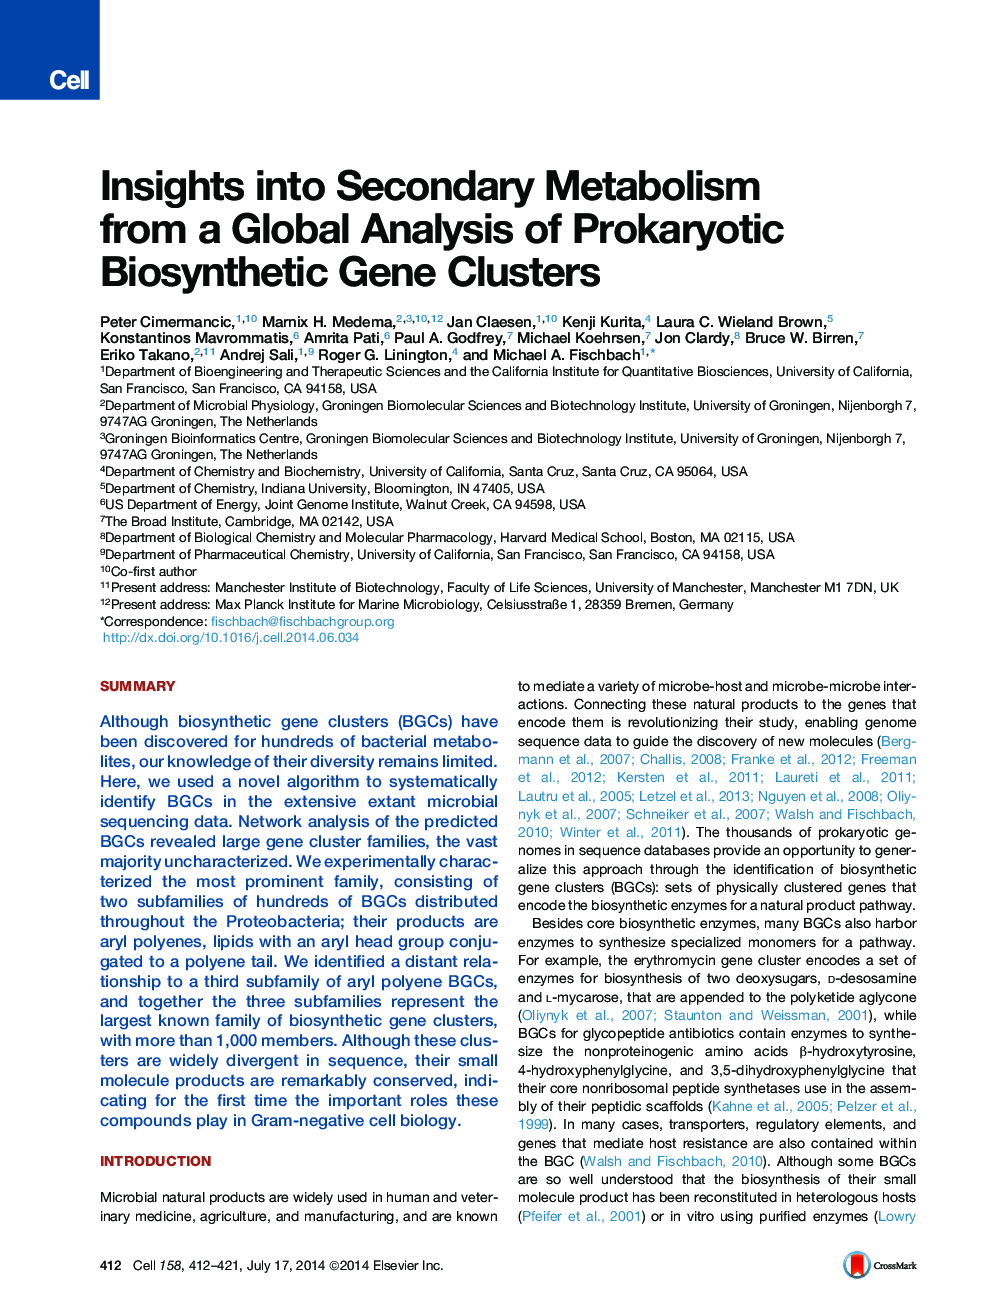 بینش متابولیسم ثانویه از یک تجزیه و تحلیل جهانی از خوشه های ژنی بیوسنتز پروکاریوتی 